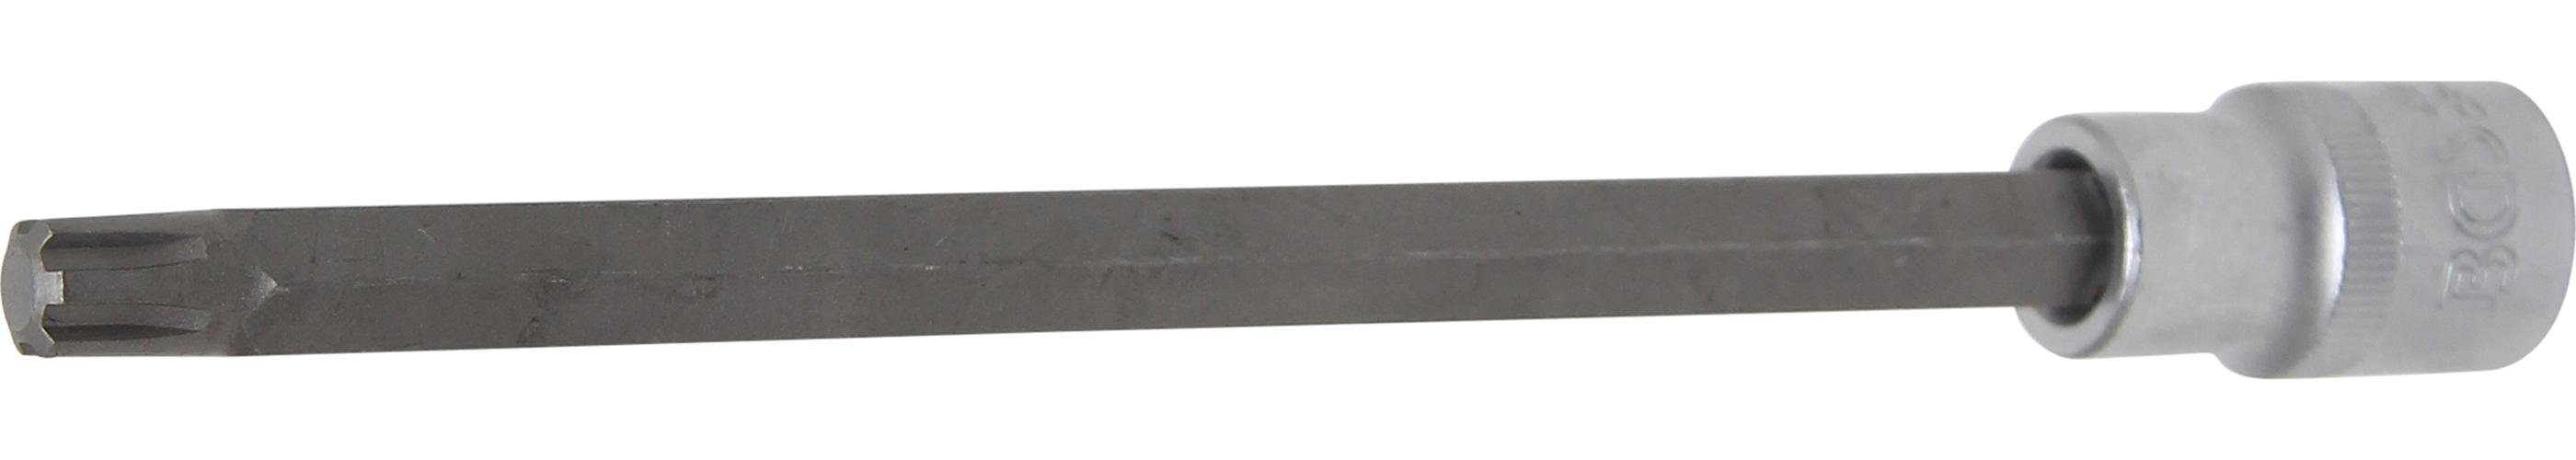 BGS technic Bit-Schraubendreher Bit-Einsatz, Länge 200 mm, Antrieb Innenvierkant 12,5 mm (1/2), Keil-Profil (für RIBE) M10